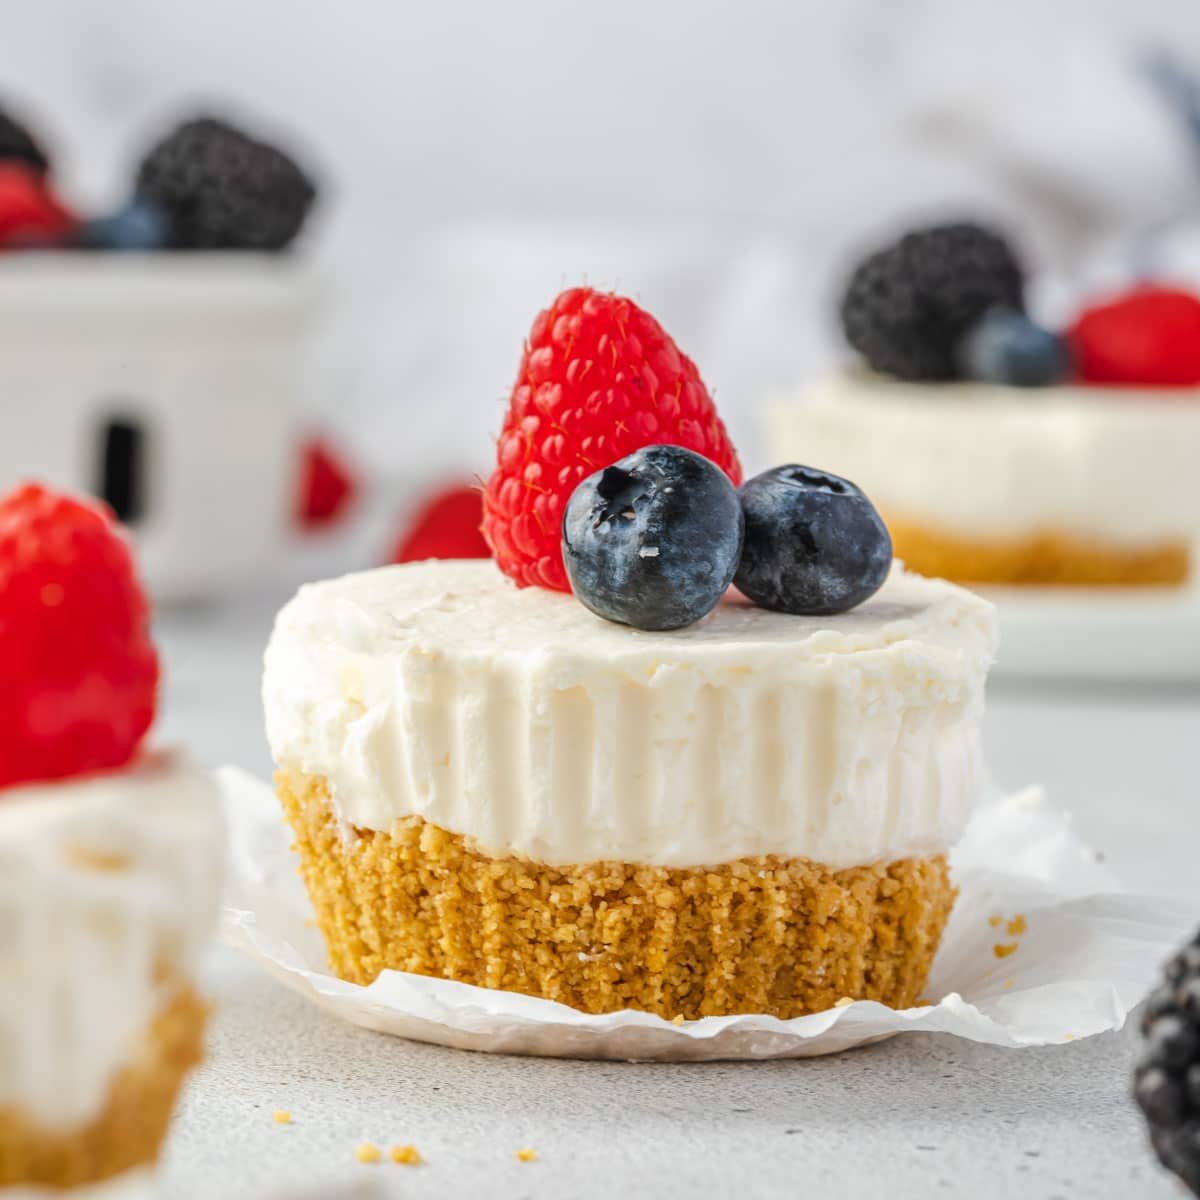 https://stateofdinner.com/wp-content/uploads/2023/03/mini-no-bake-cheesecake-recipe.jpg